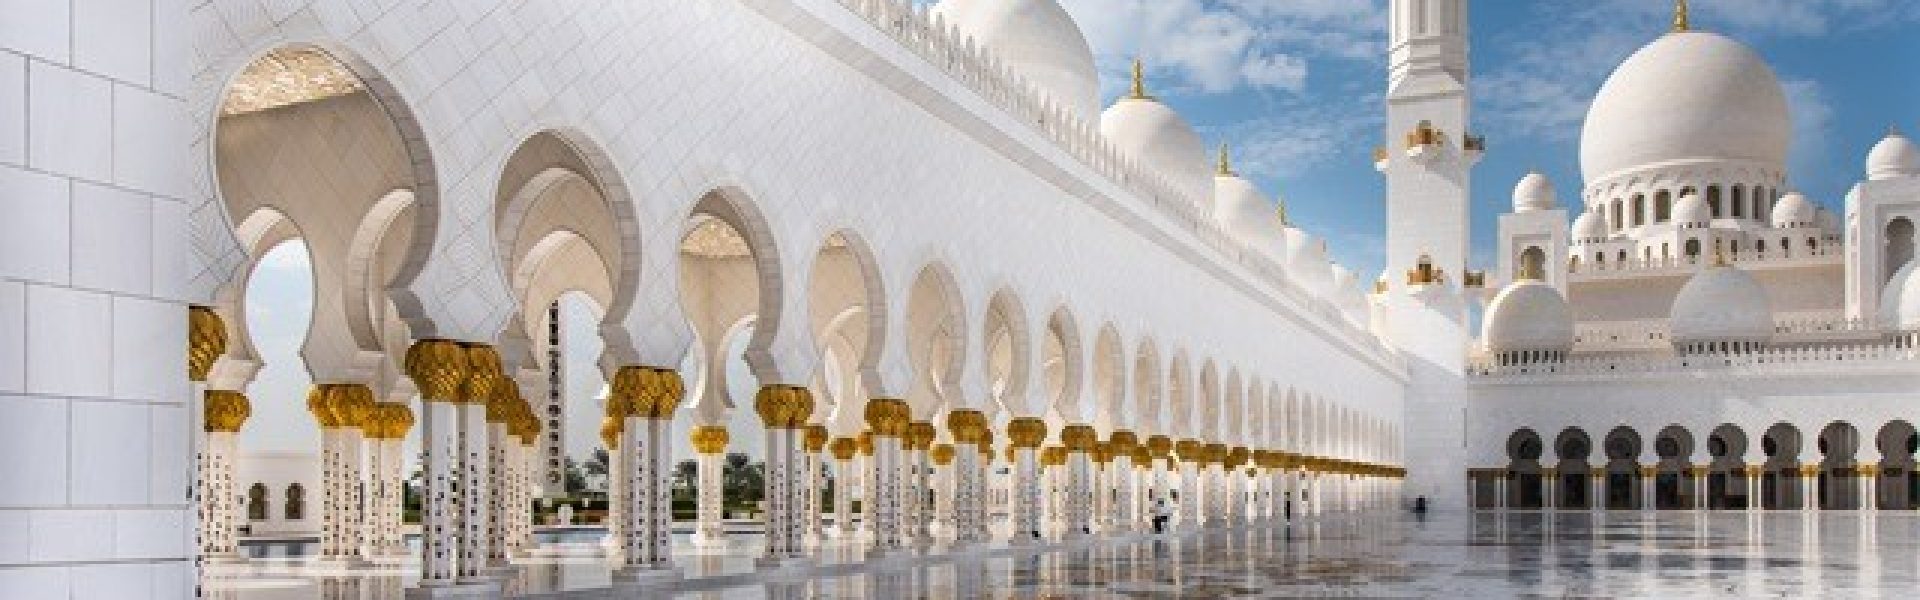 moschee-abu dhabi-urlaubsreisen-urlaubsangebote emirate Das Bild zeigt die atemberaubende Moschee in Abu Dhabi, einer der beeindruckendsten architektonischen Schätze der Vereinigten Arabischen Emirate. Mit ihren kunstvollen Details, den imposanten Kuppeln und den eleganten Minaretten strahlt die Moschee eine majestätische Pracht aus. Abu Dhabi ist ein beliebtes Reiseziel für Urlaubsreisen in die Emirate und bietet Besuchern die Möglichkeit, diese faszinierende Moschee zu erkunden und die reiche Kultur und Geschichte der Region zu erleben.